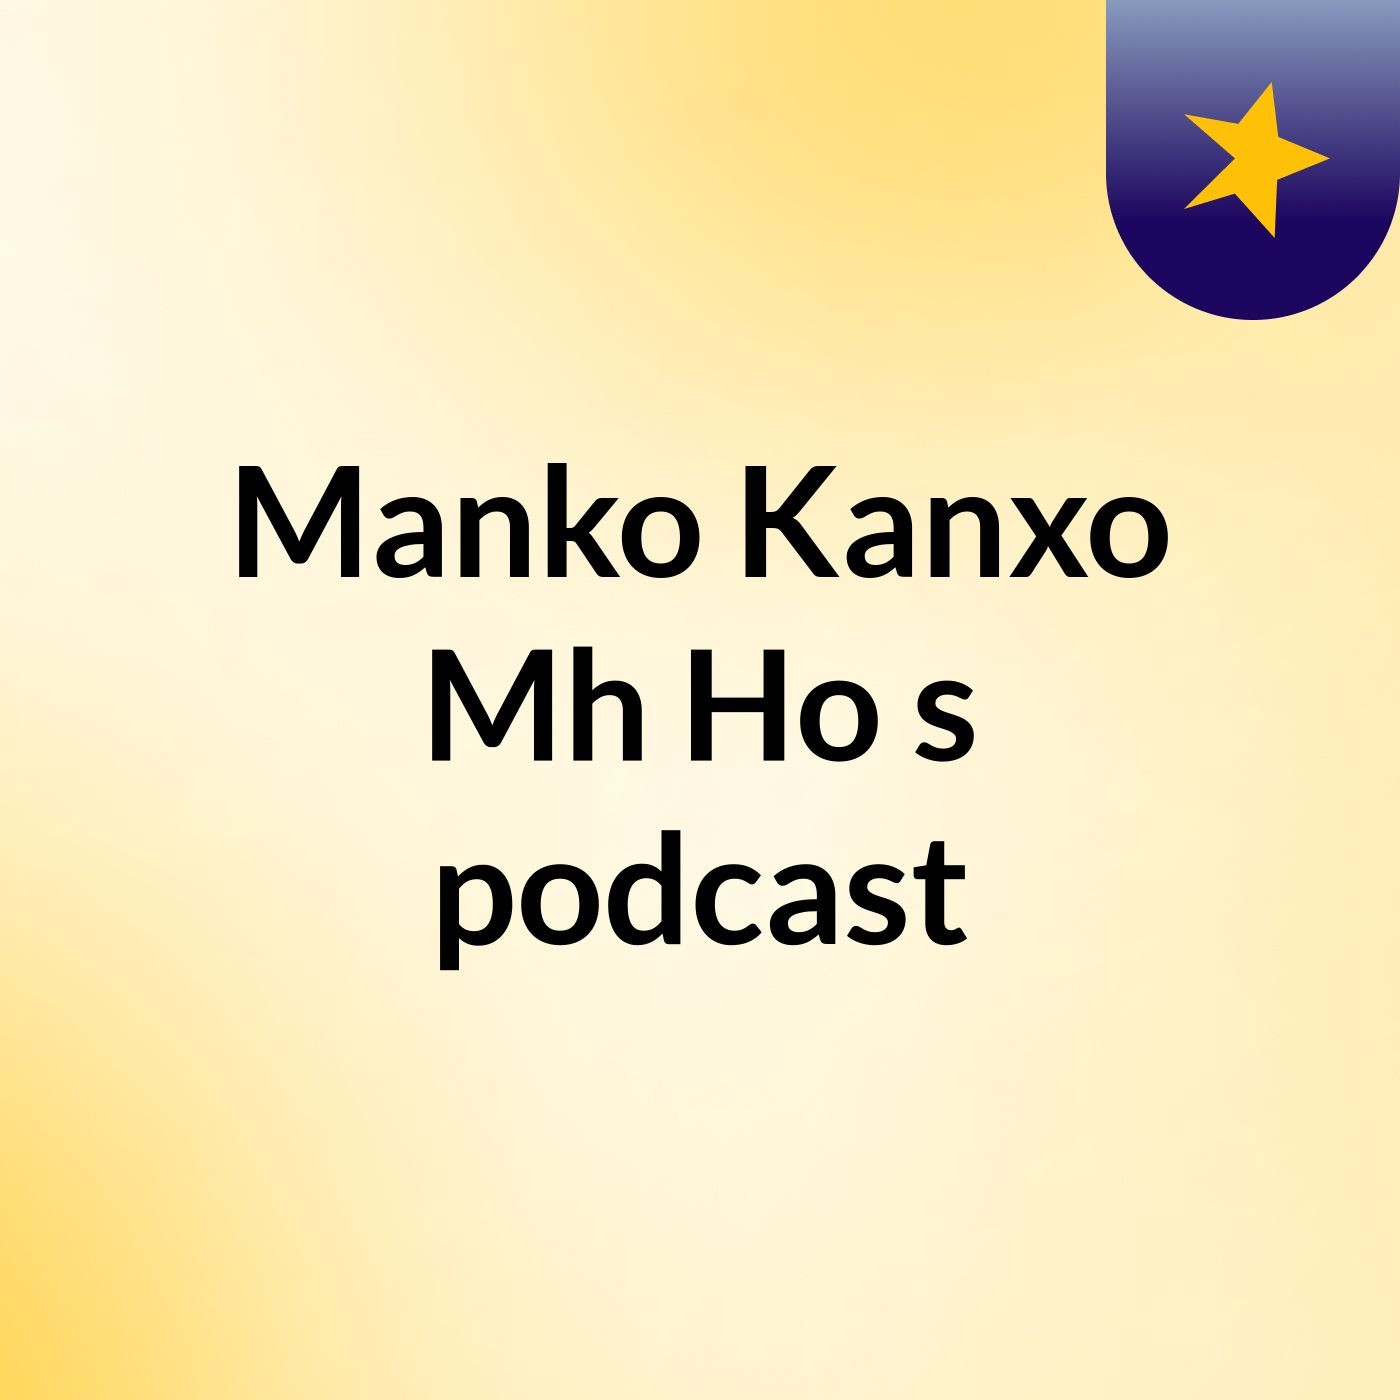 Manko Kanxo Mh Ho's podcast